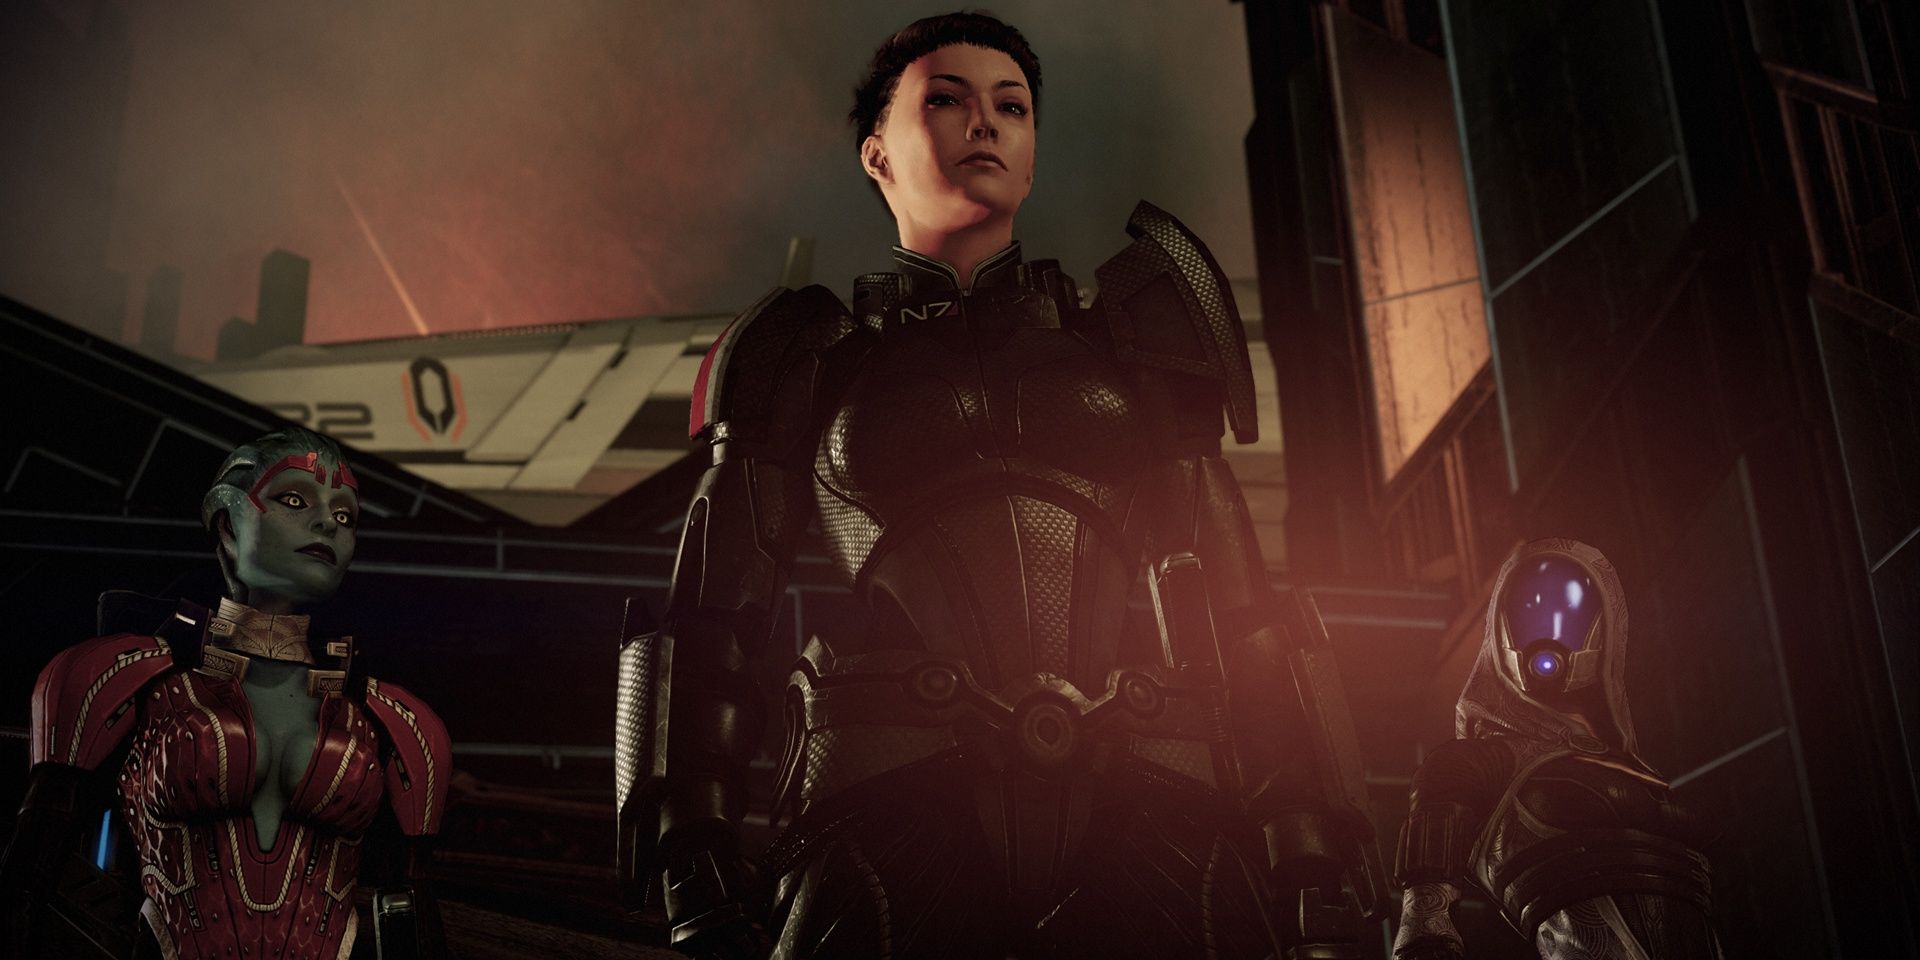 Mass Effect 2 Samara and Tali Cutscene Still Image